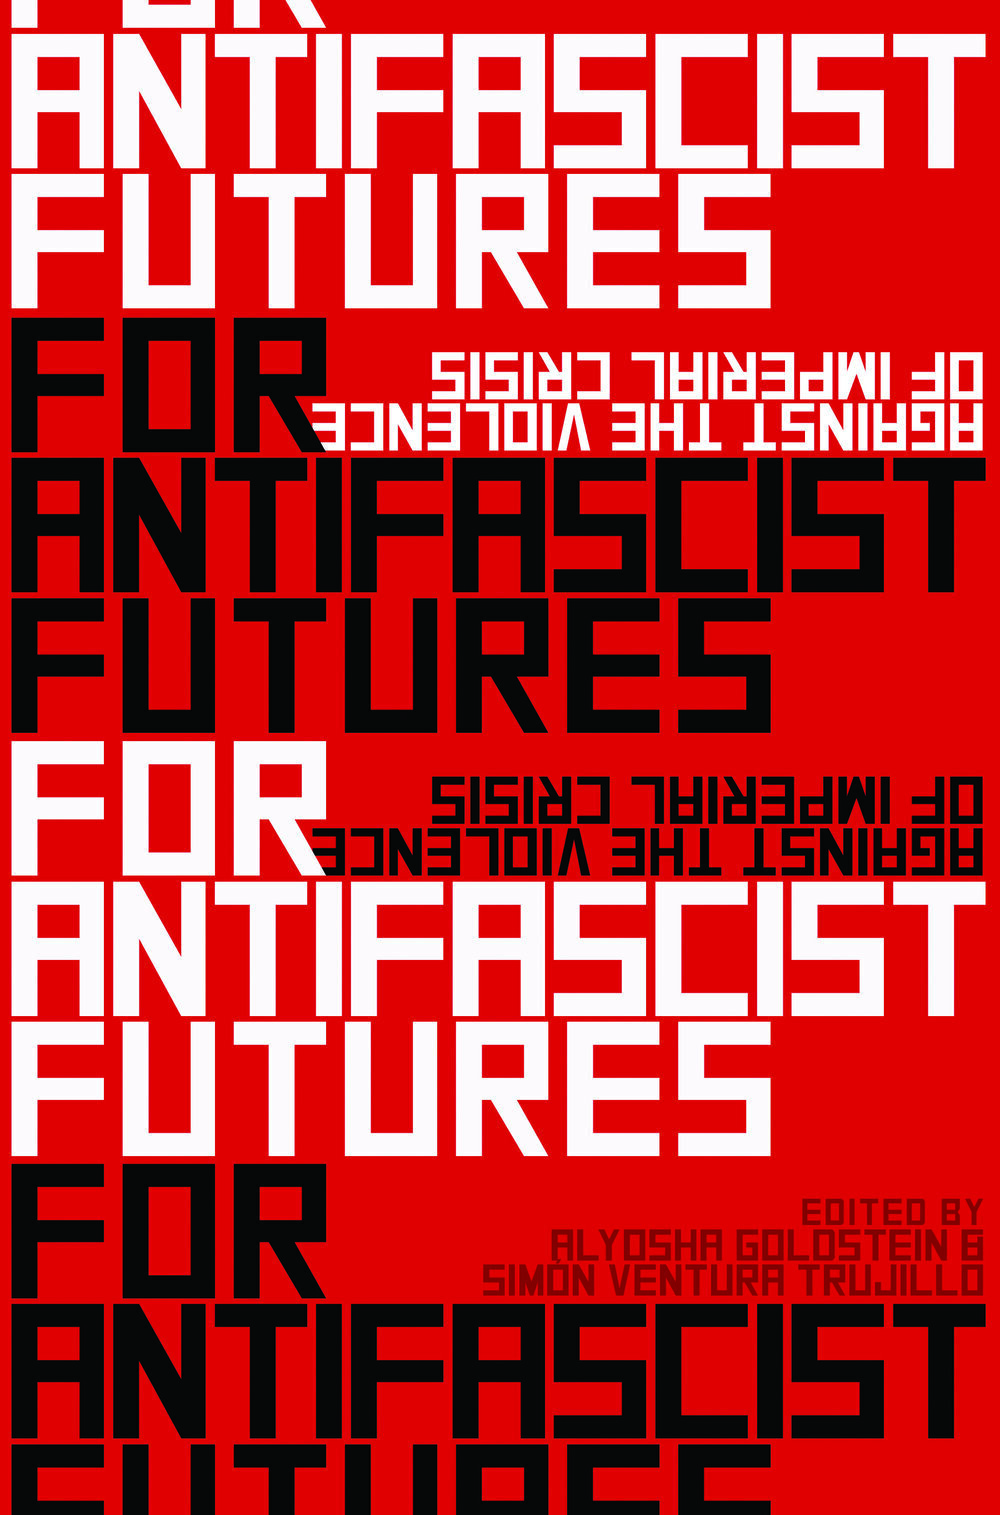 For Antifascist Futures